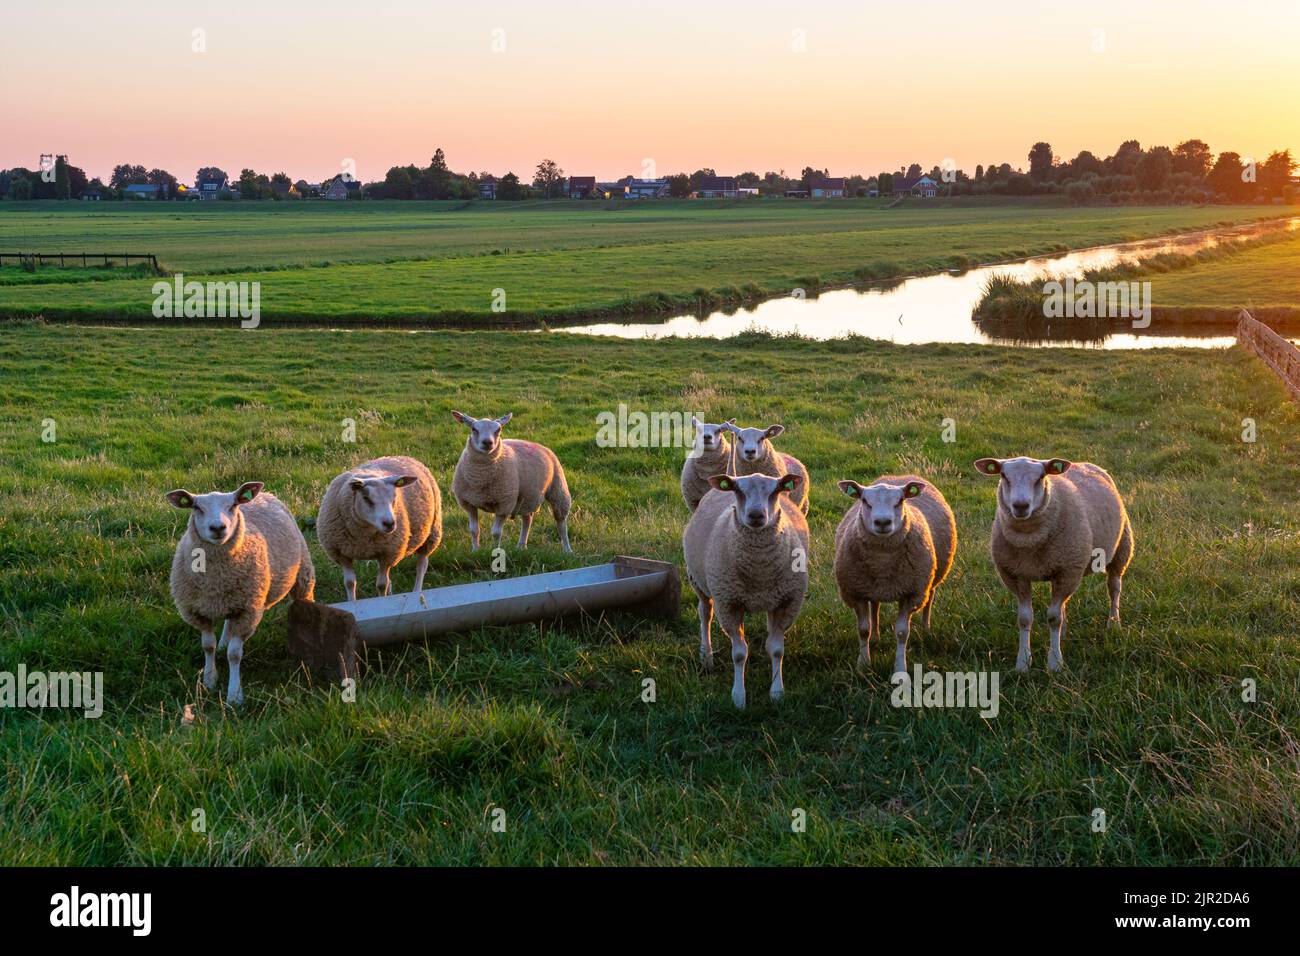 Les moutons dans le paysage hollandais de prairie pendant le coucher du soleil regardent curieusement le photographe Banque D'Images